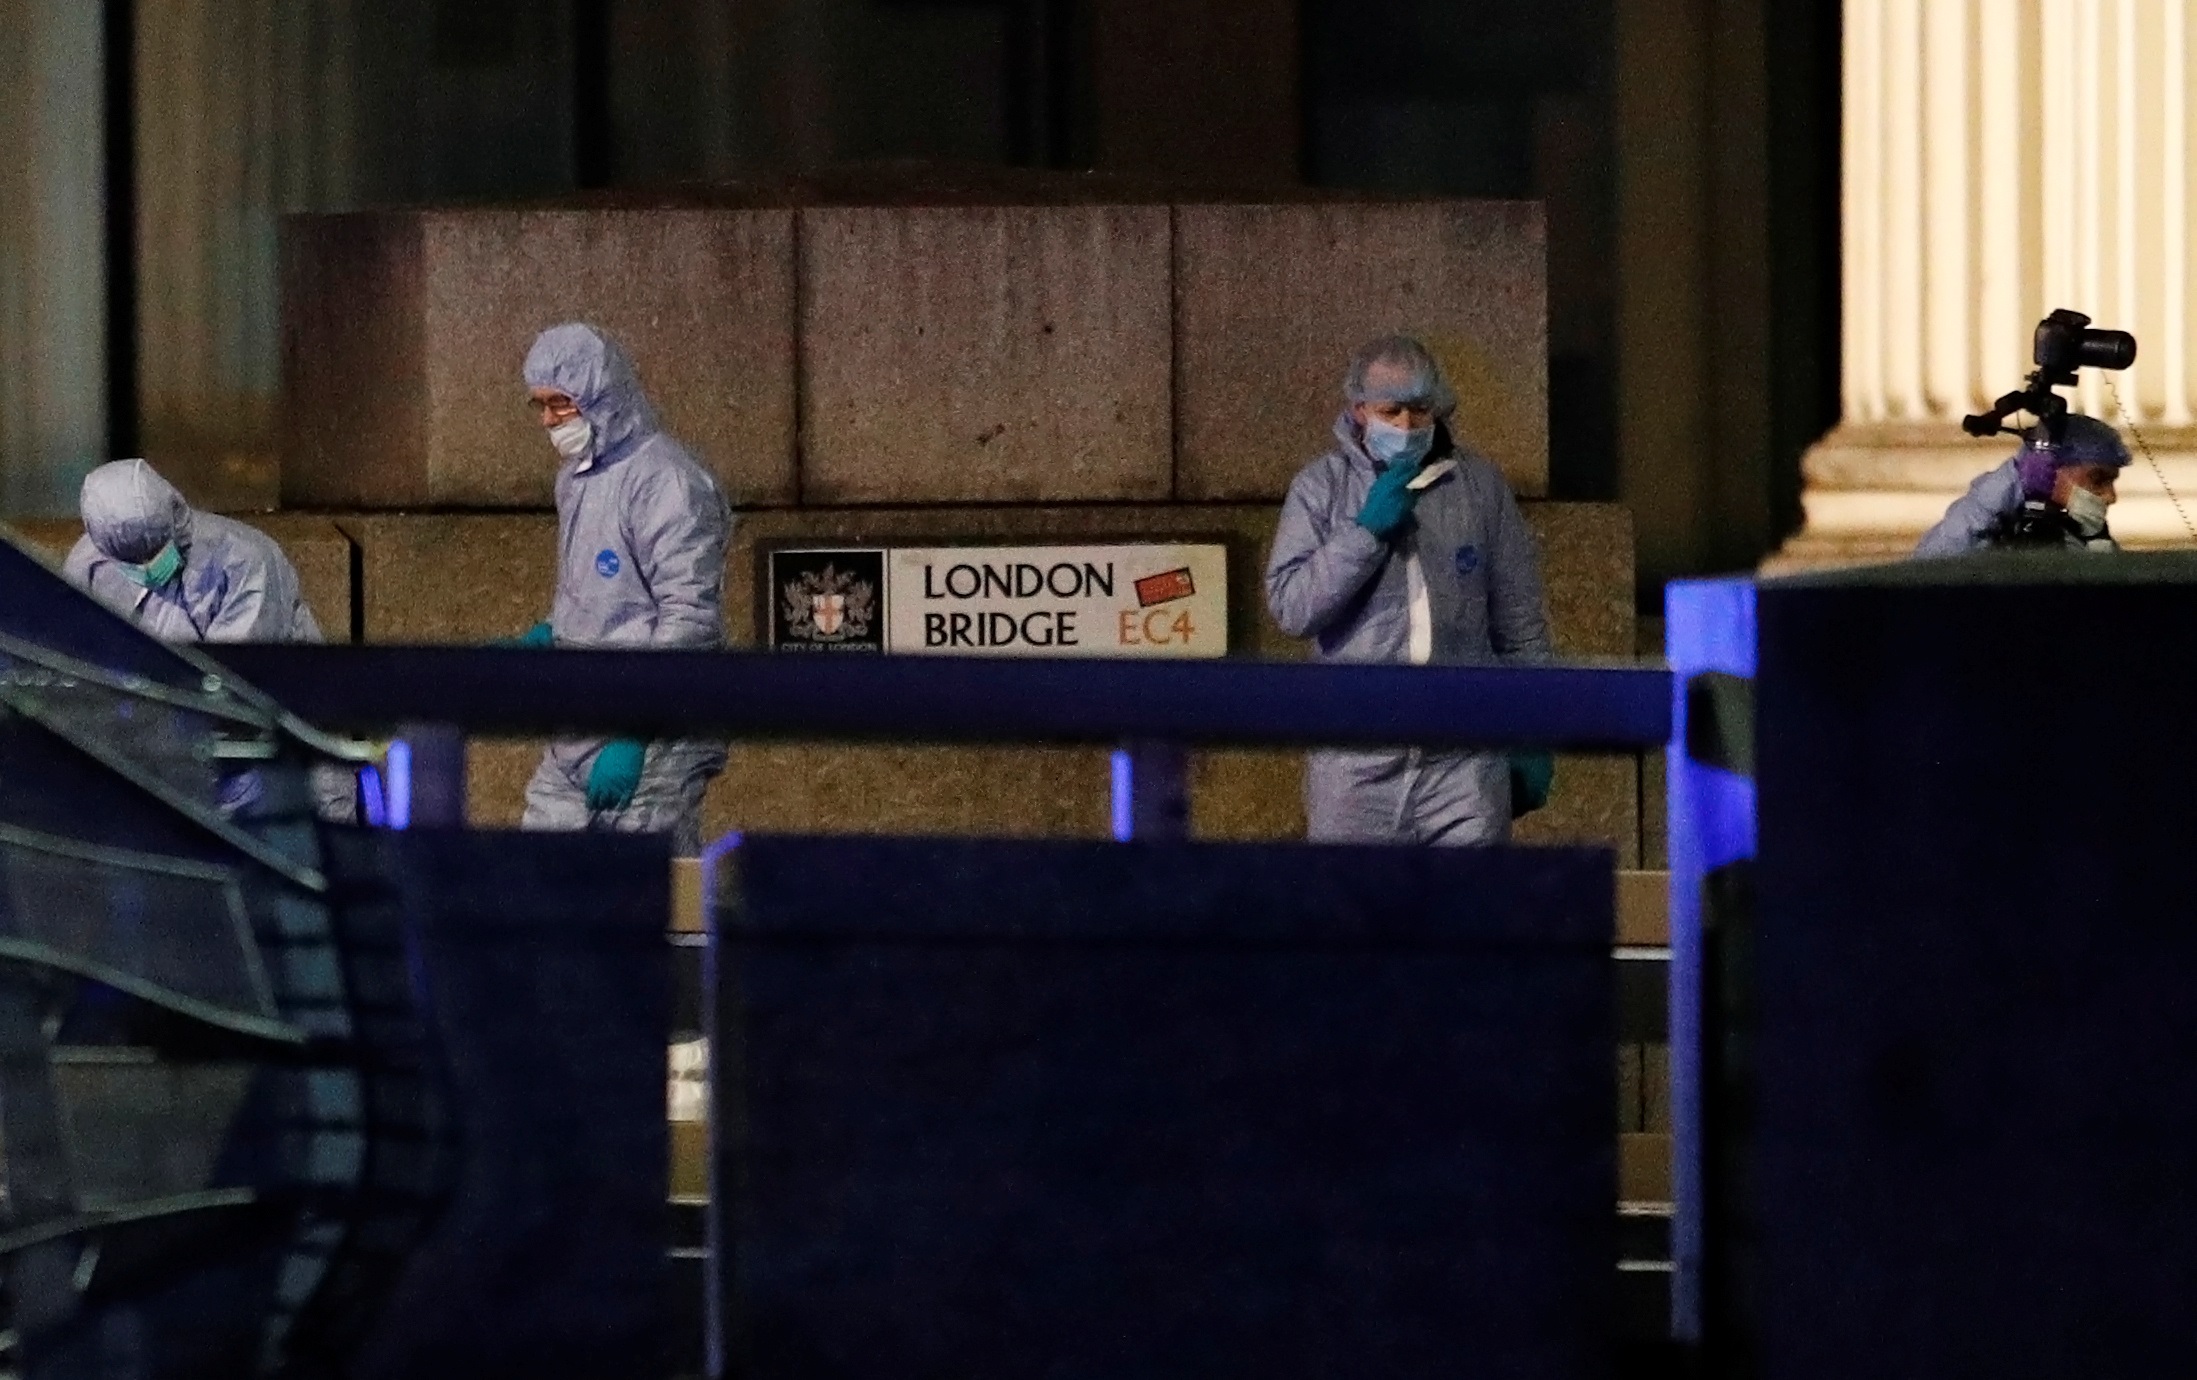 Λονδίνο: Δύο και επισήμως οι νεκροί πολίτες της τρομοκρατικής επίθεσης!